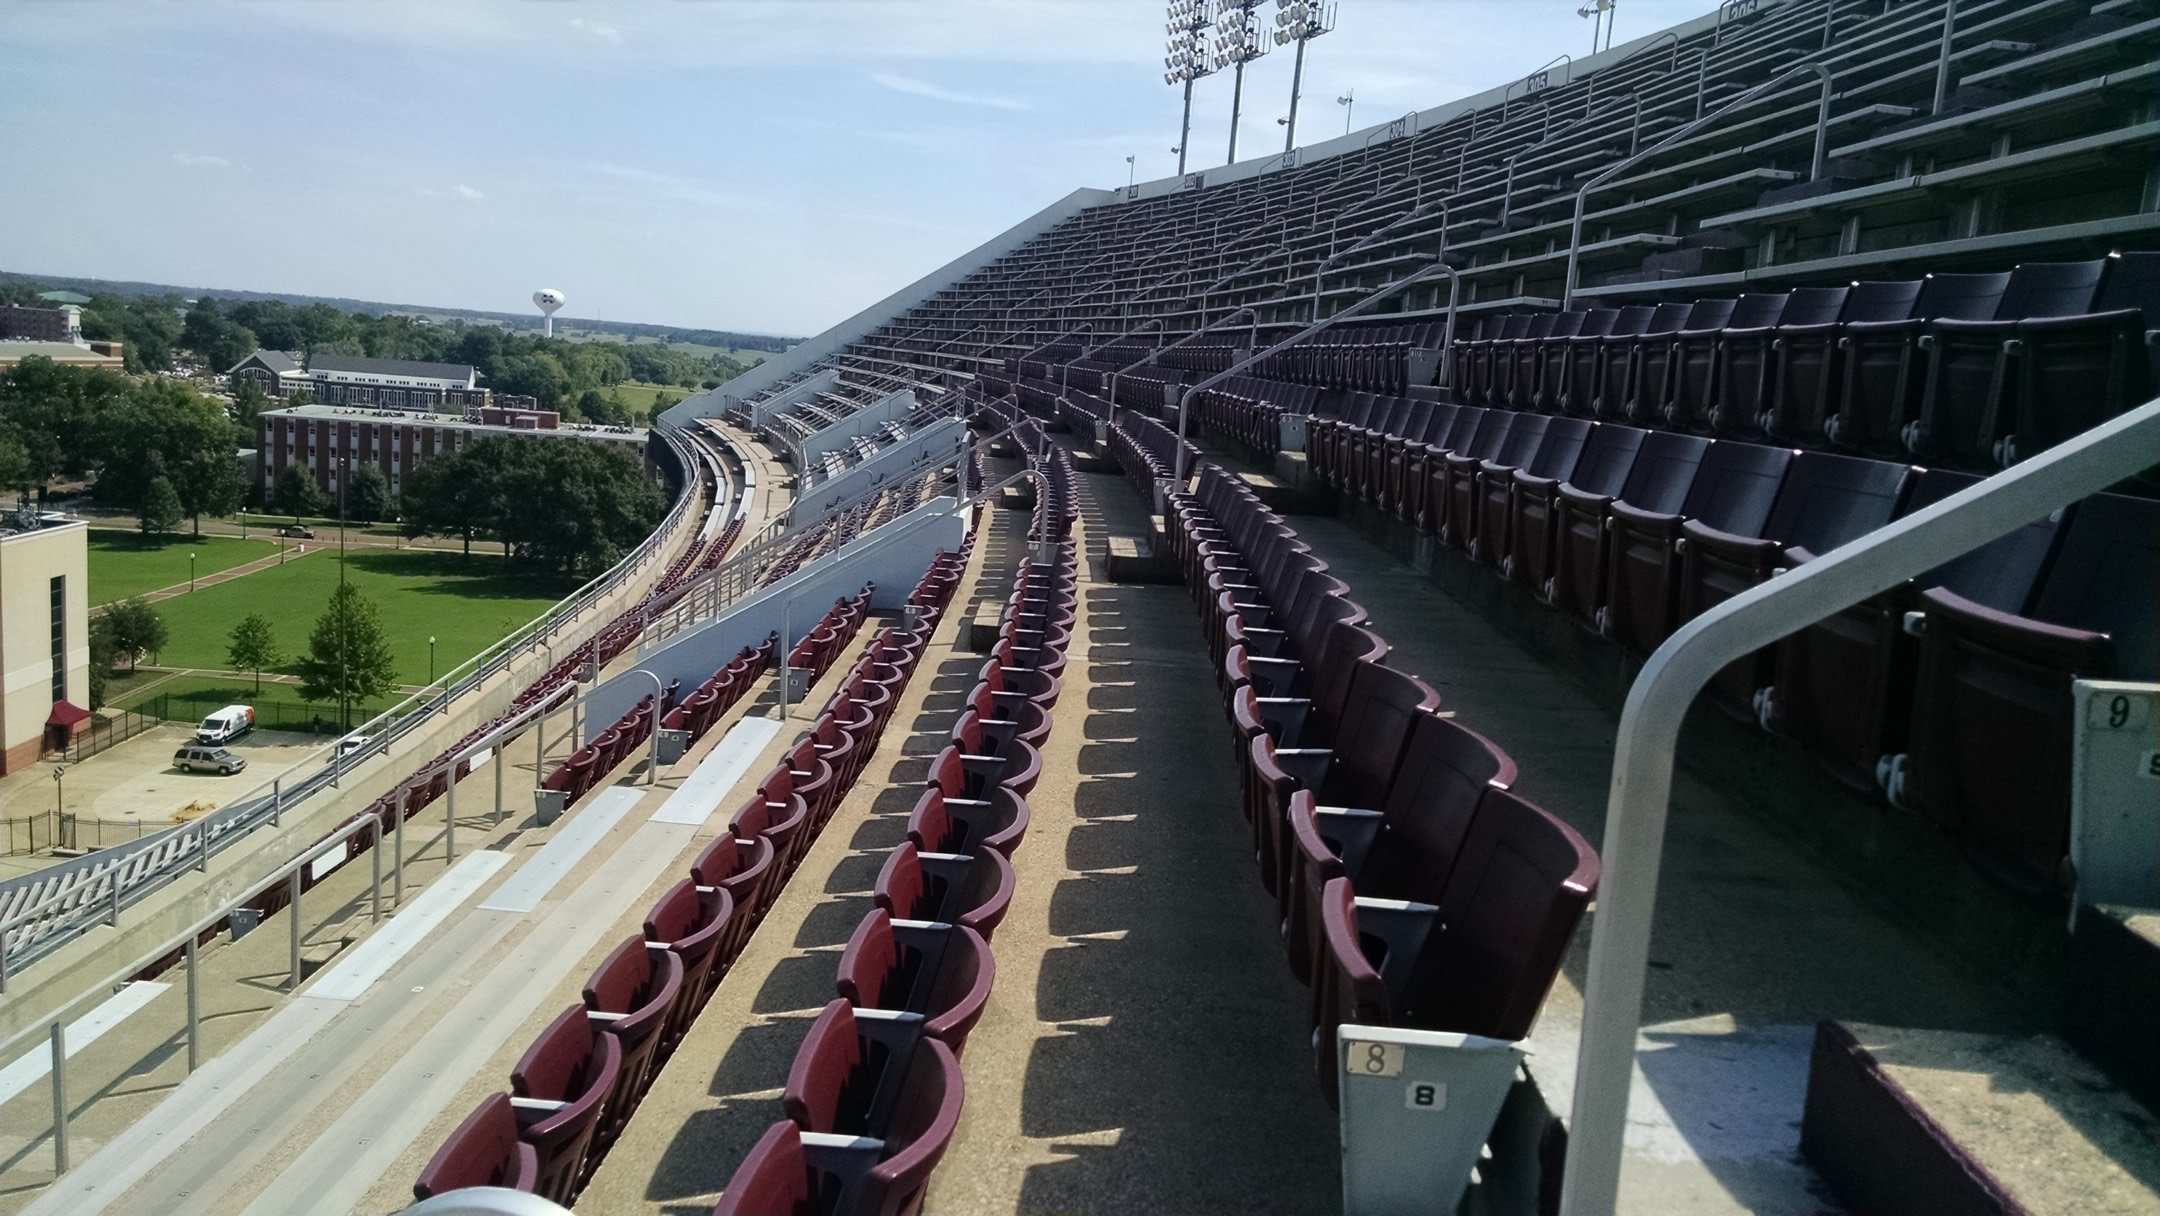 Davis Wade Stadium Seating Chart